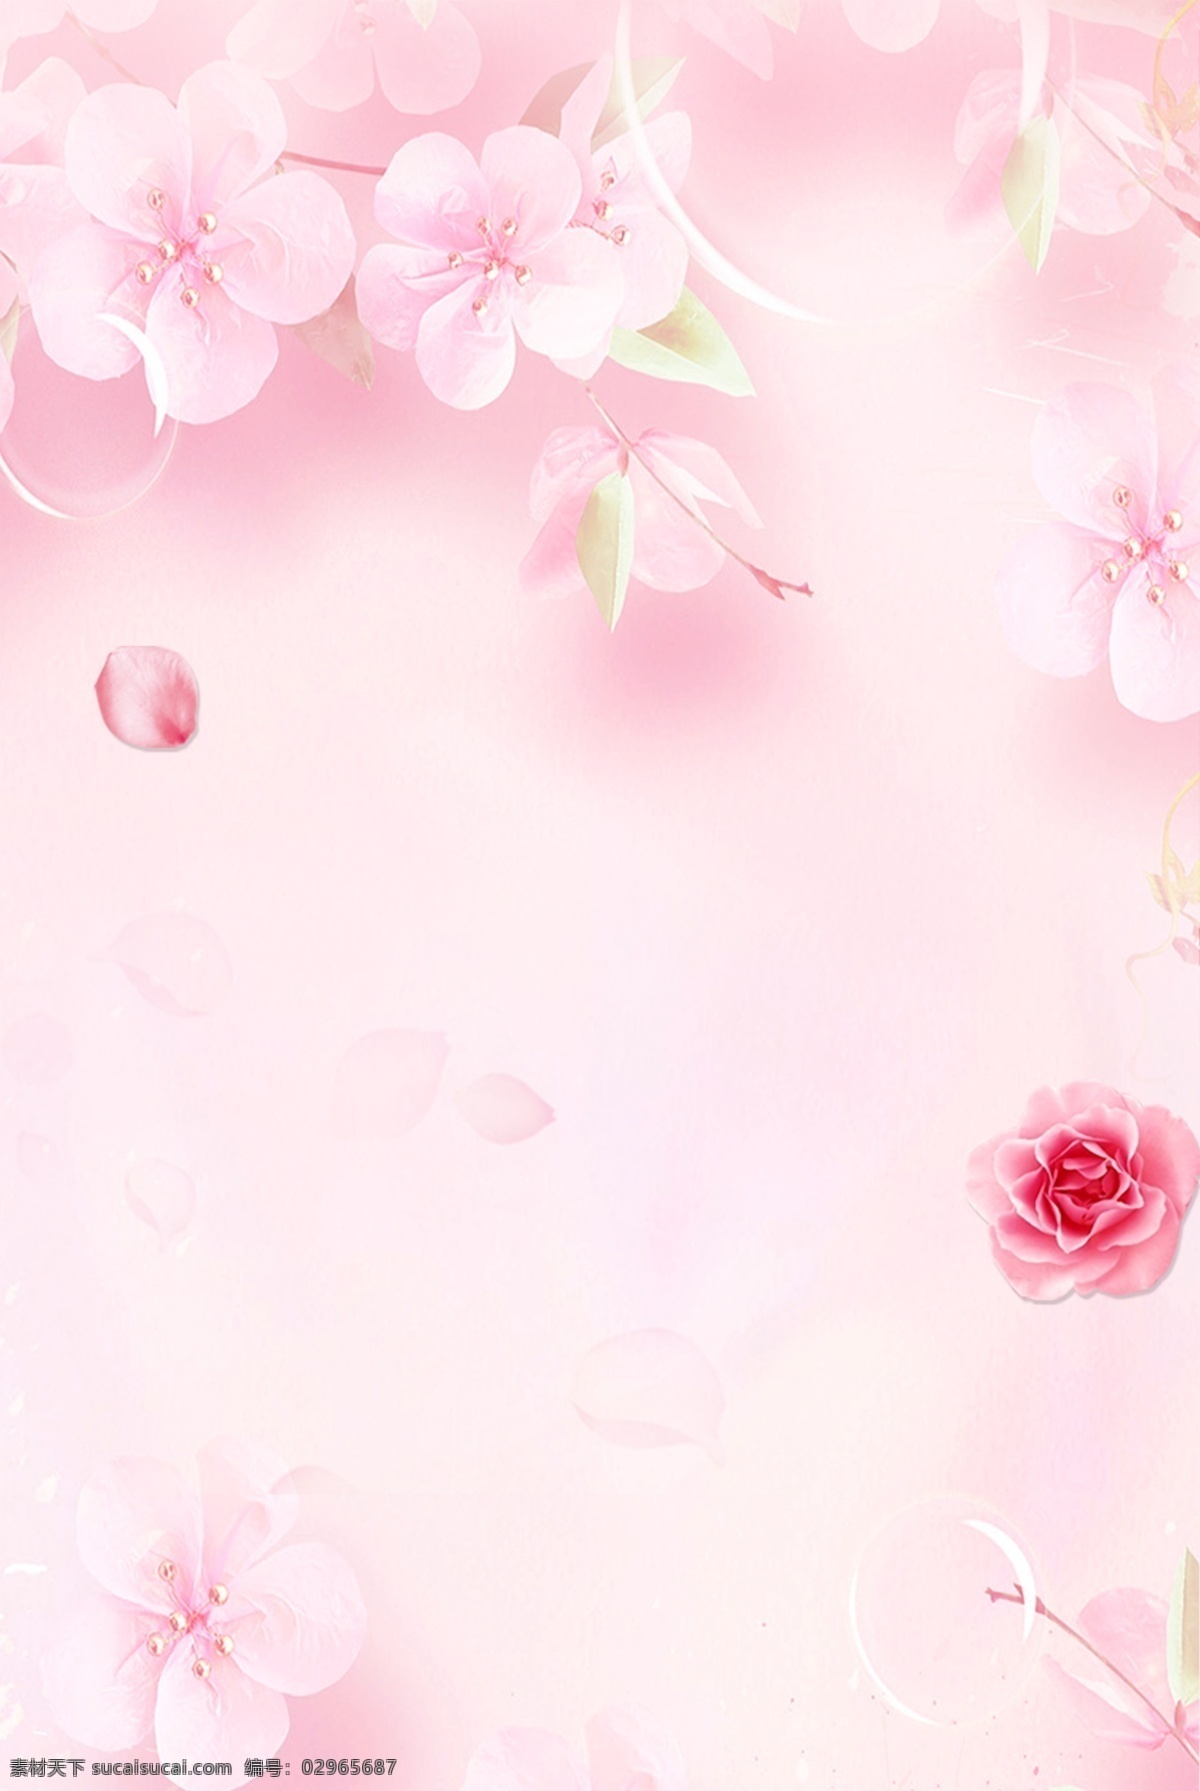 文艺 小 清新 桃花 花朵 底纹 背景 海报 花朵背景 浪漫 简约 小清新 玫瑰 花瓣